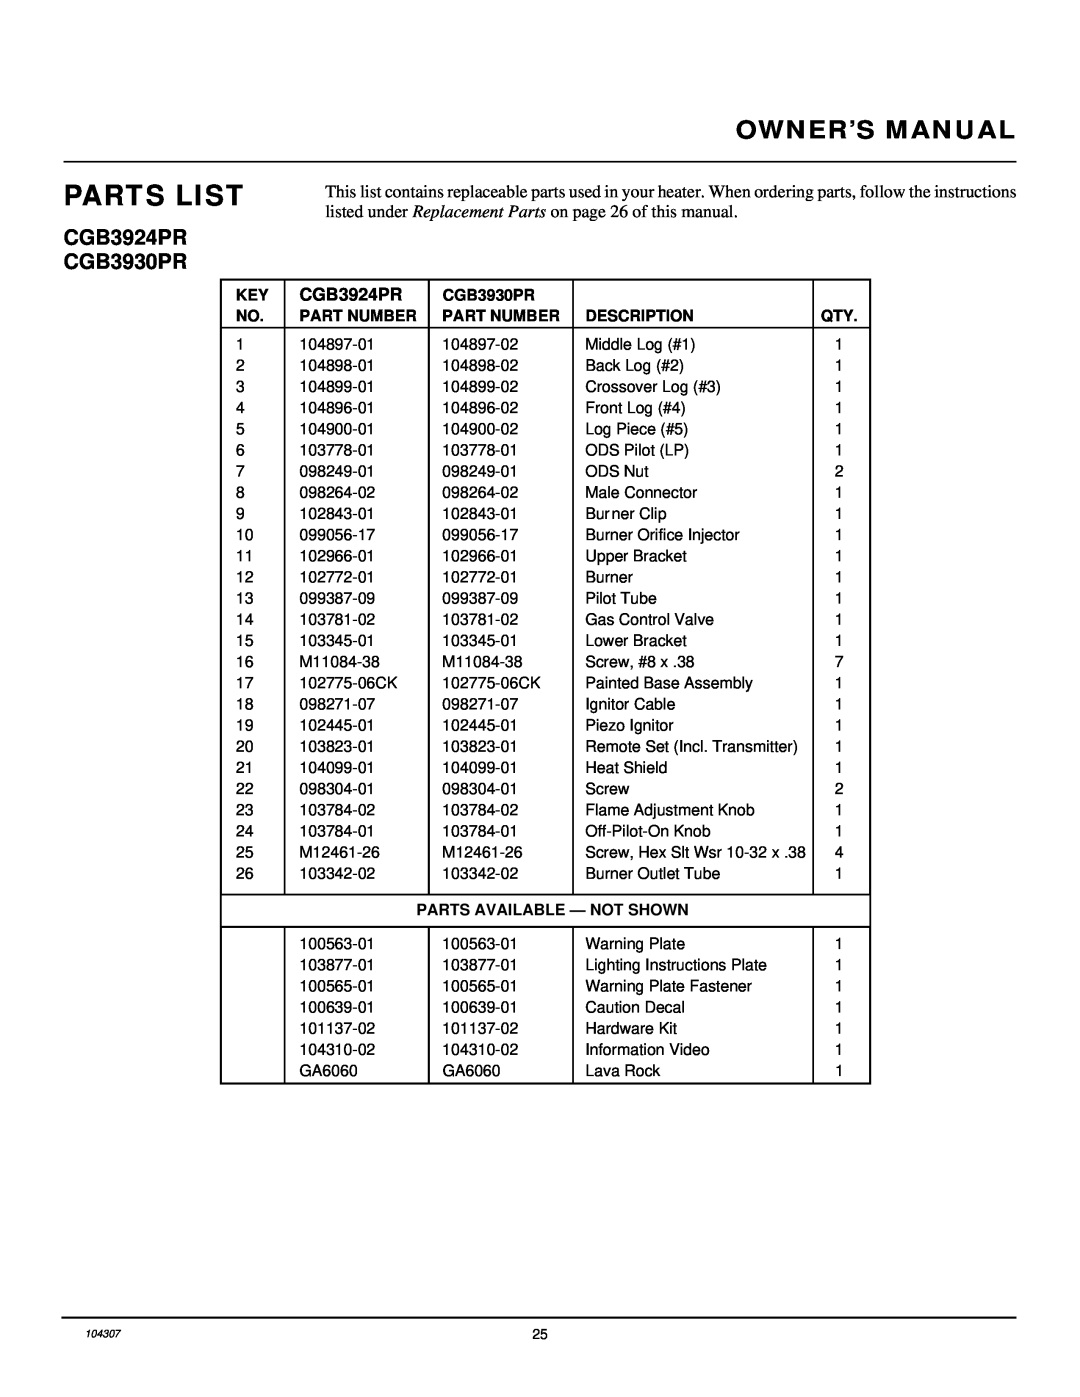 Desa CGD3924PR Parts List, CGB3924PR CGB3930PR, Part Number, Description, Parts Available - Not Shown 